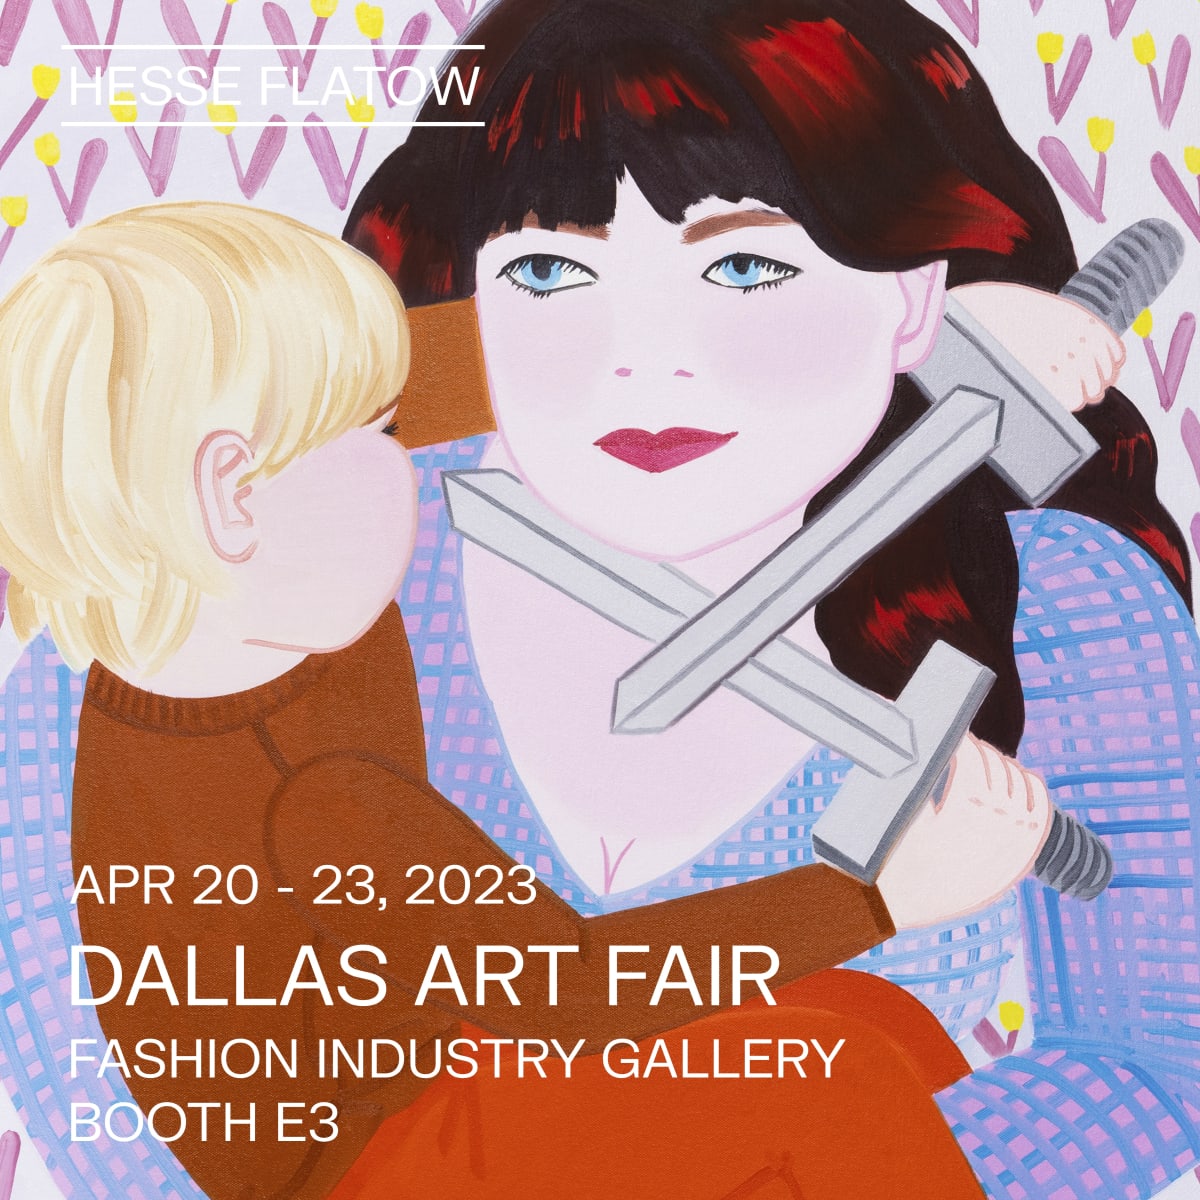 Dallas Art Fair 2023